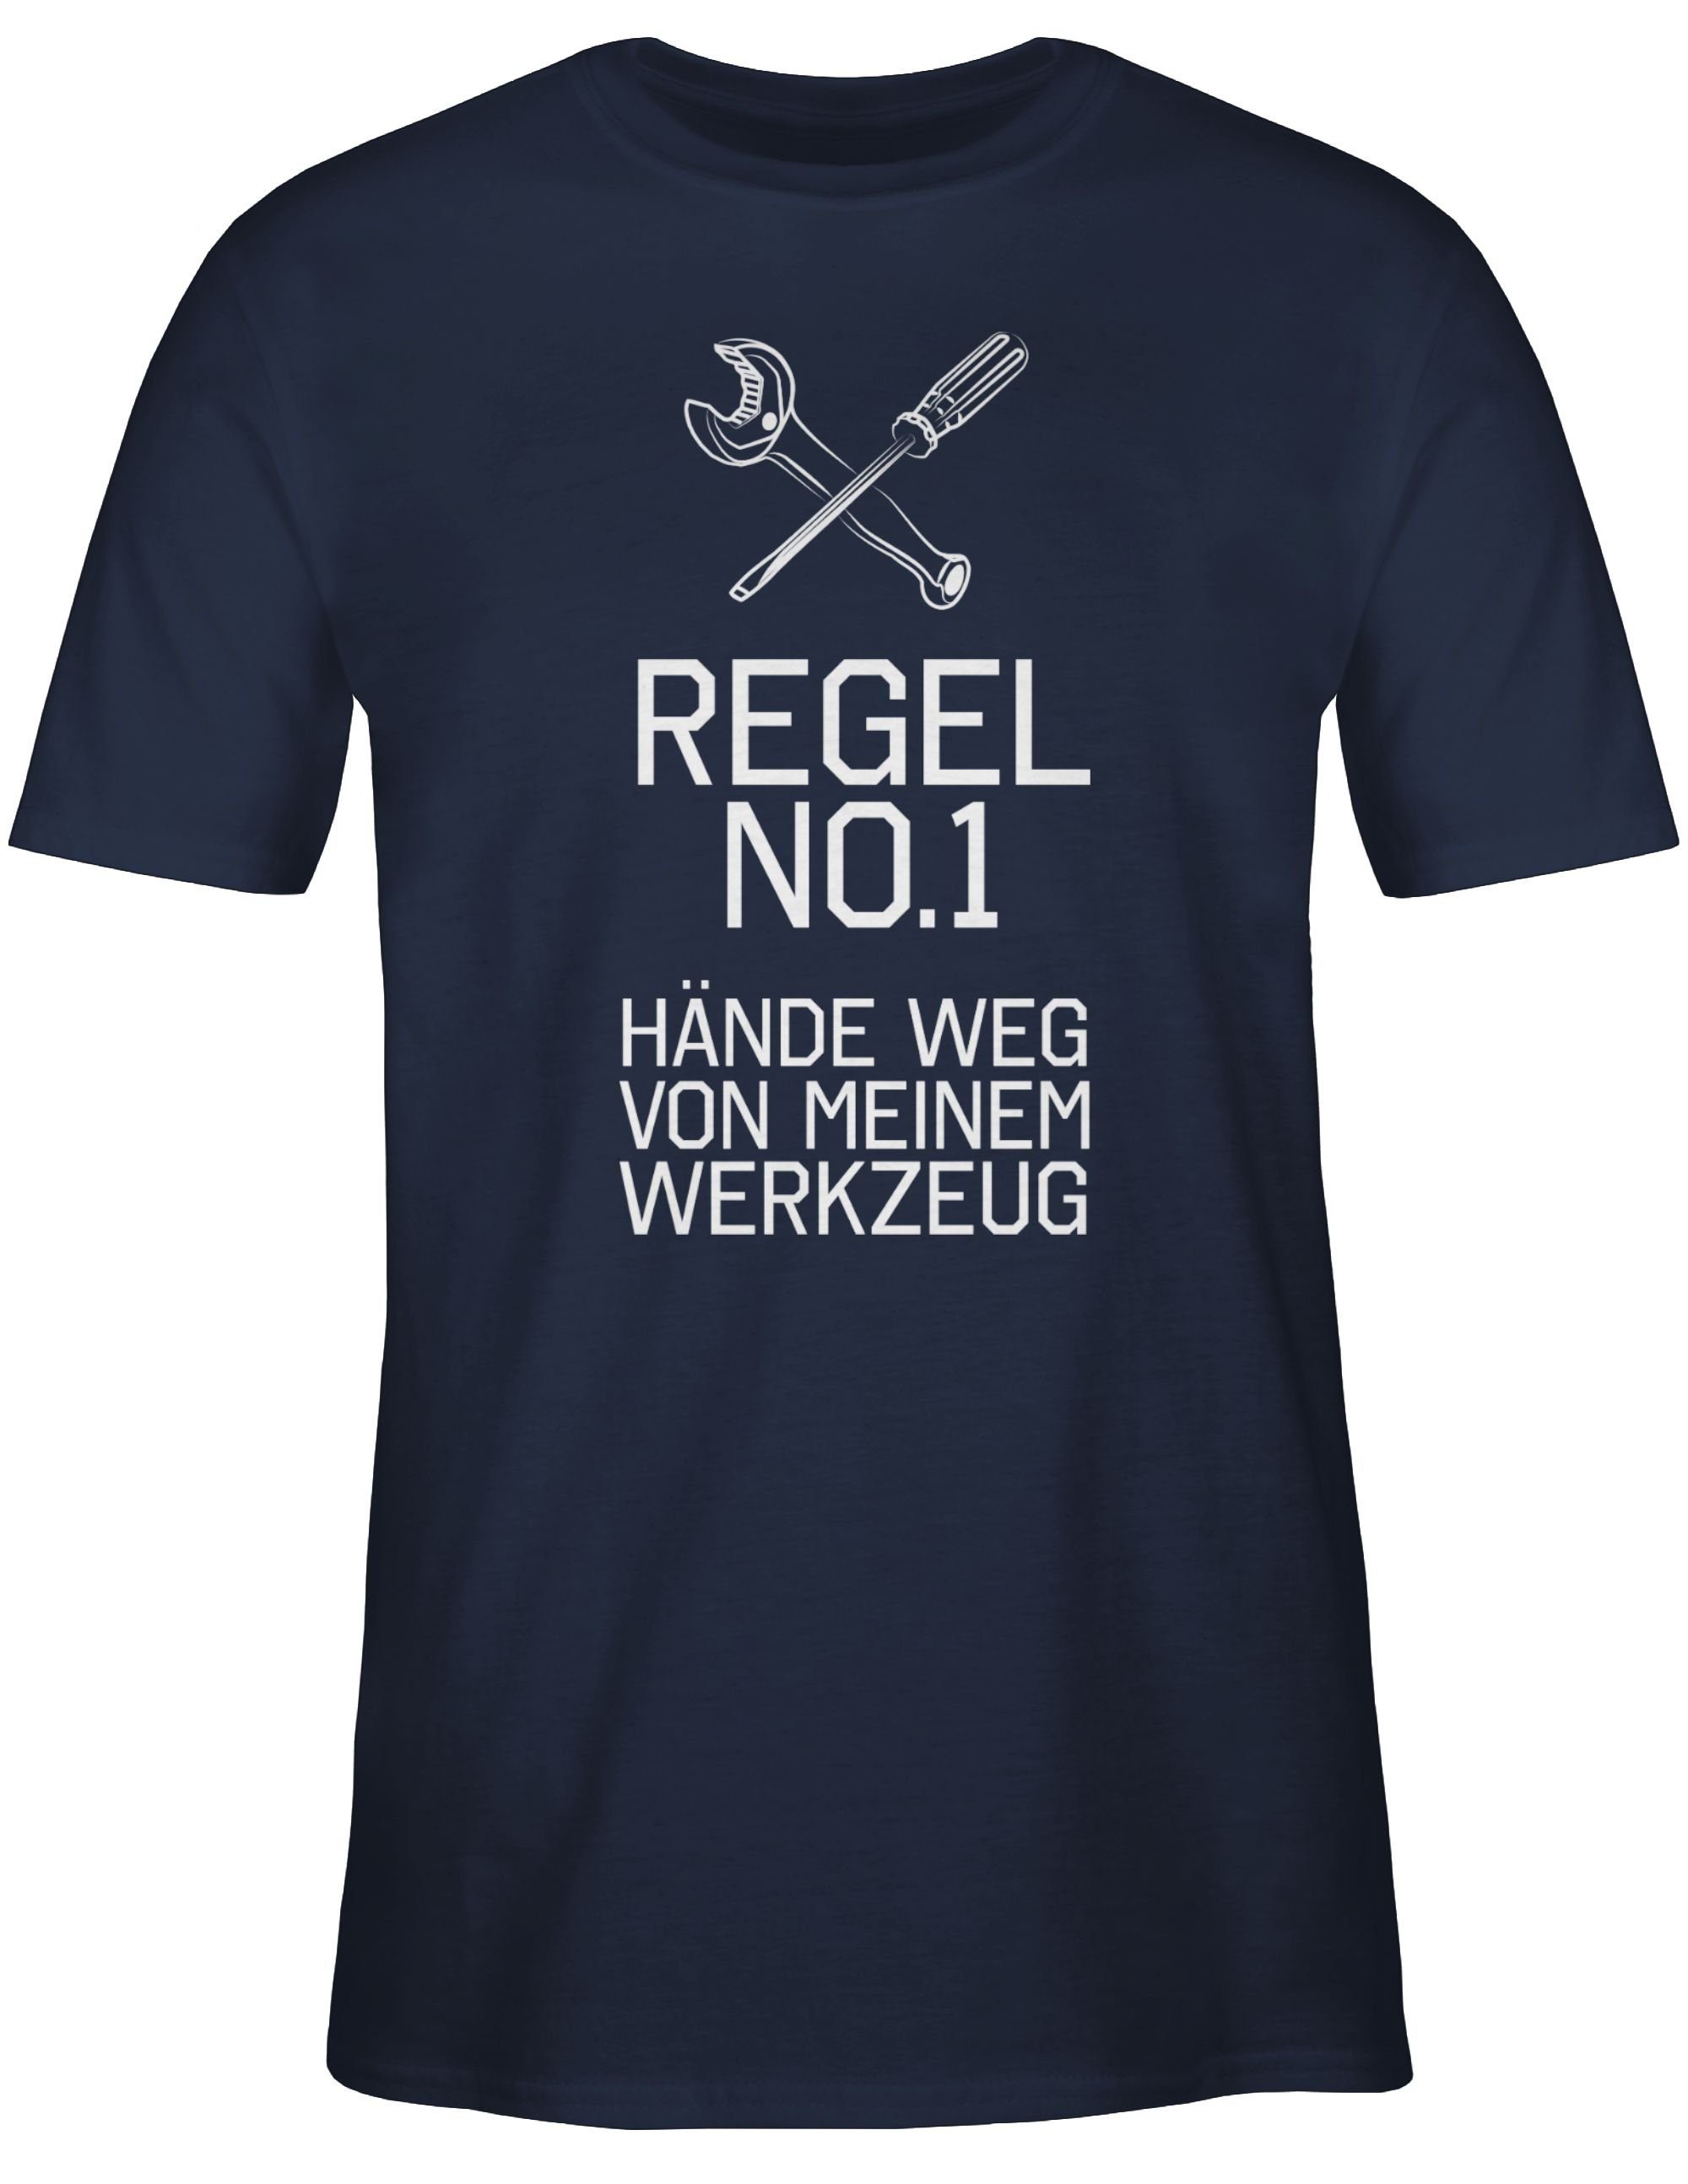 No.1 meinem Blau Shirtracer Navy Hände weg Geschenke 2 T-Shirt von Handwerker Regel Werkzeug